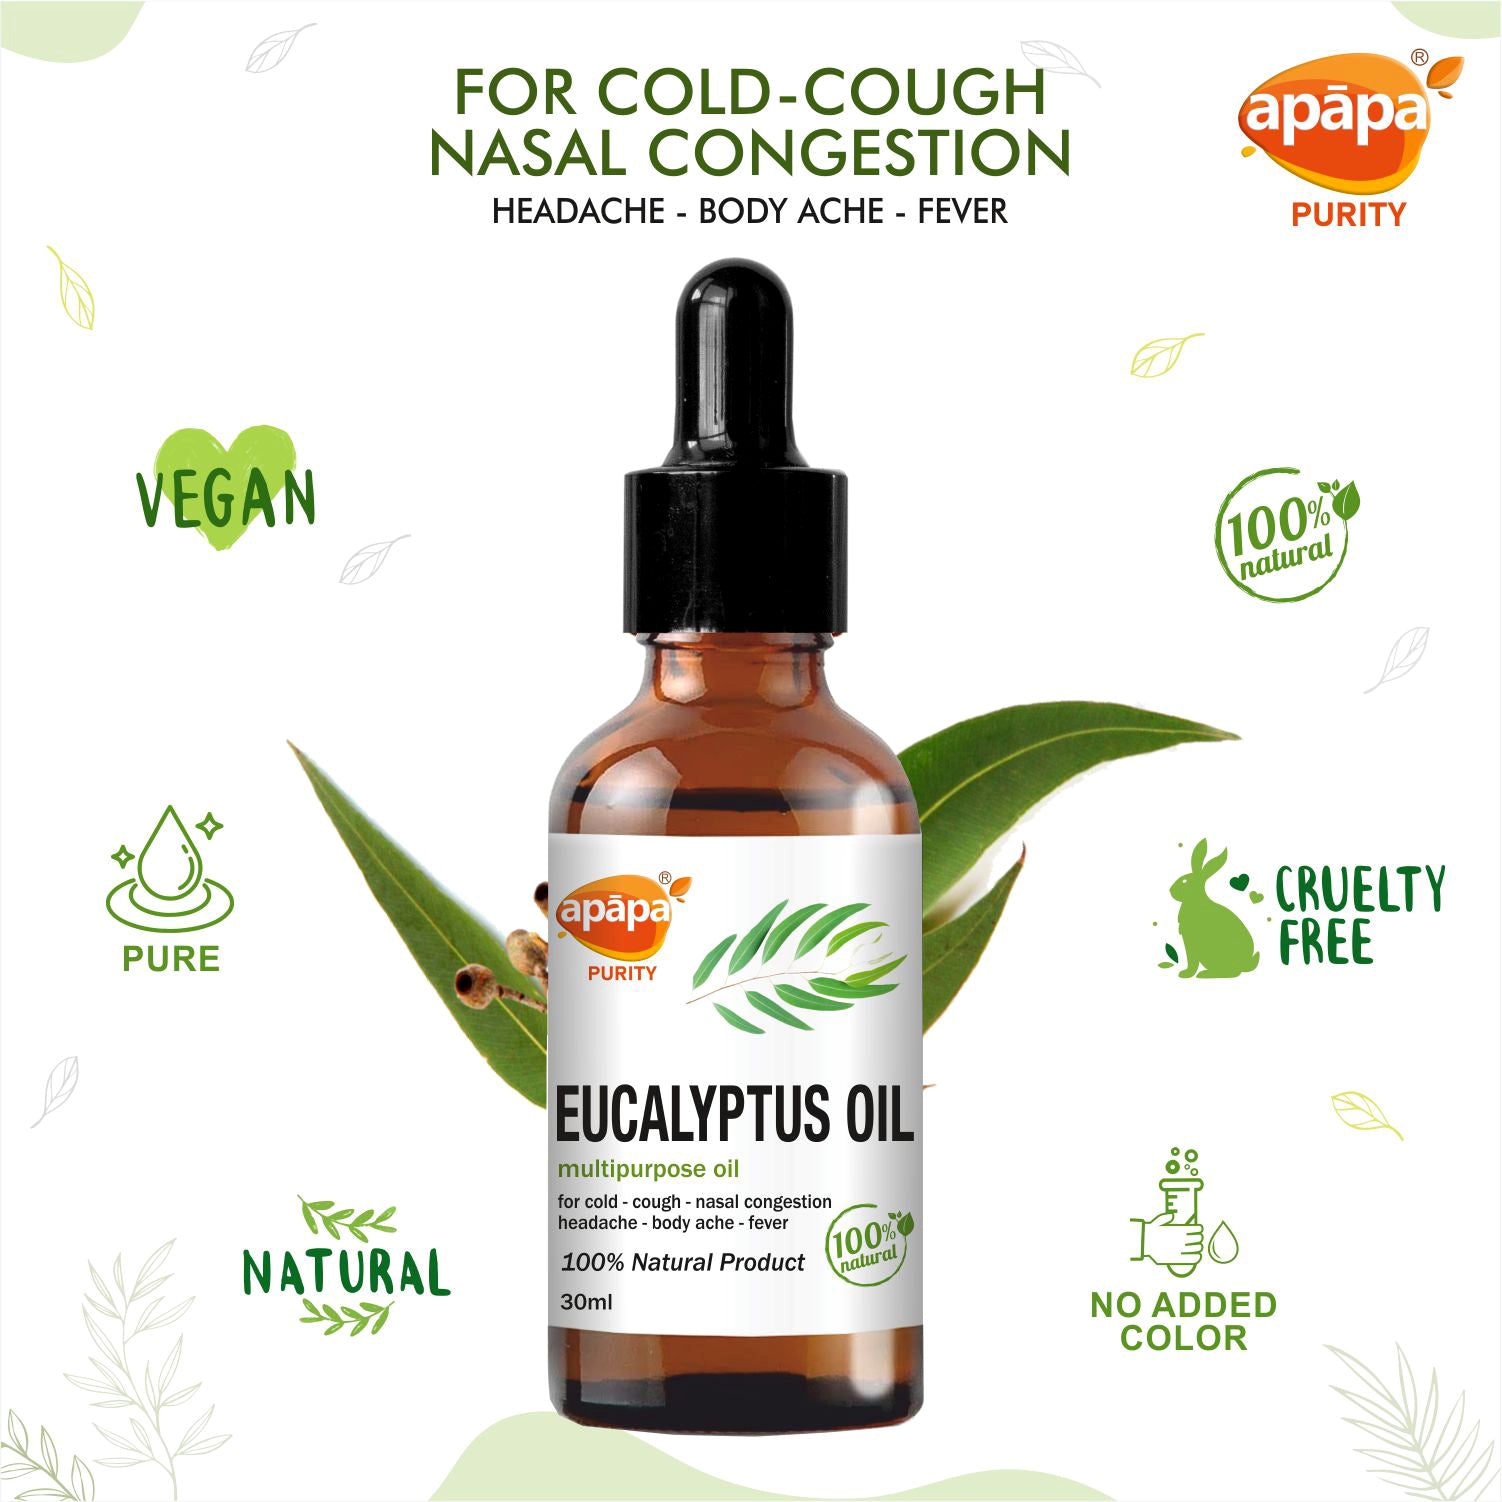 APĀPA Aromatic Eucalyptus Oil